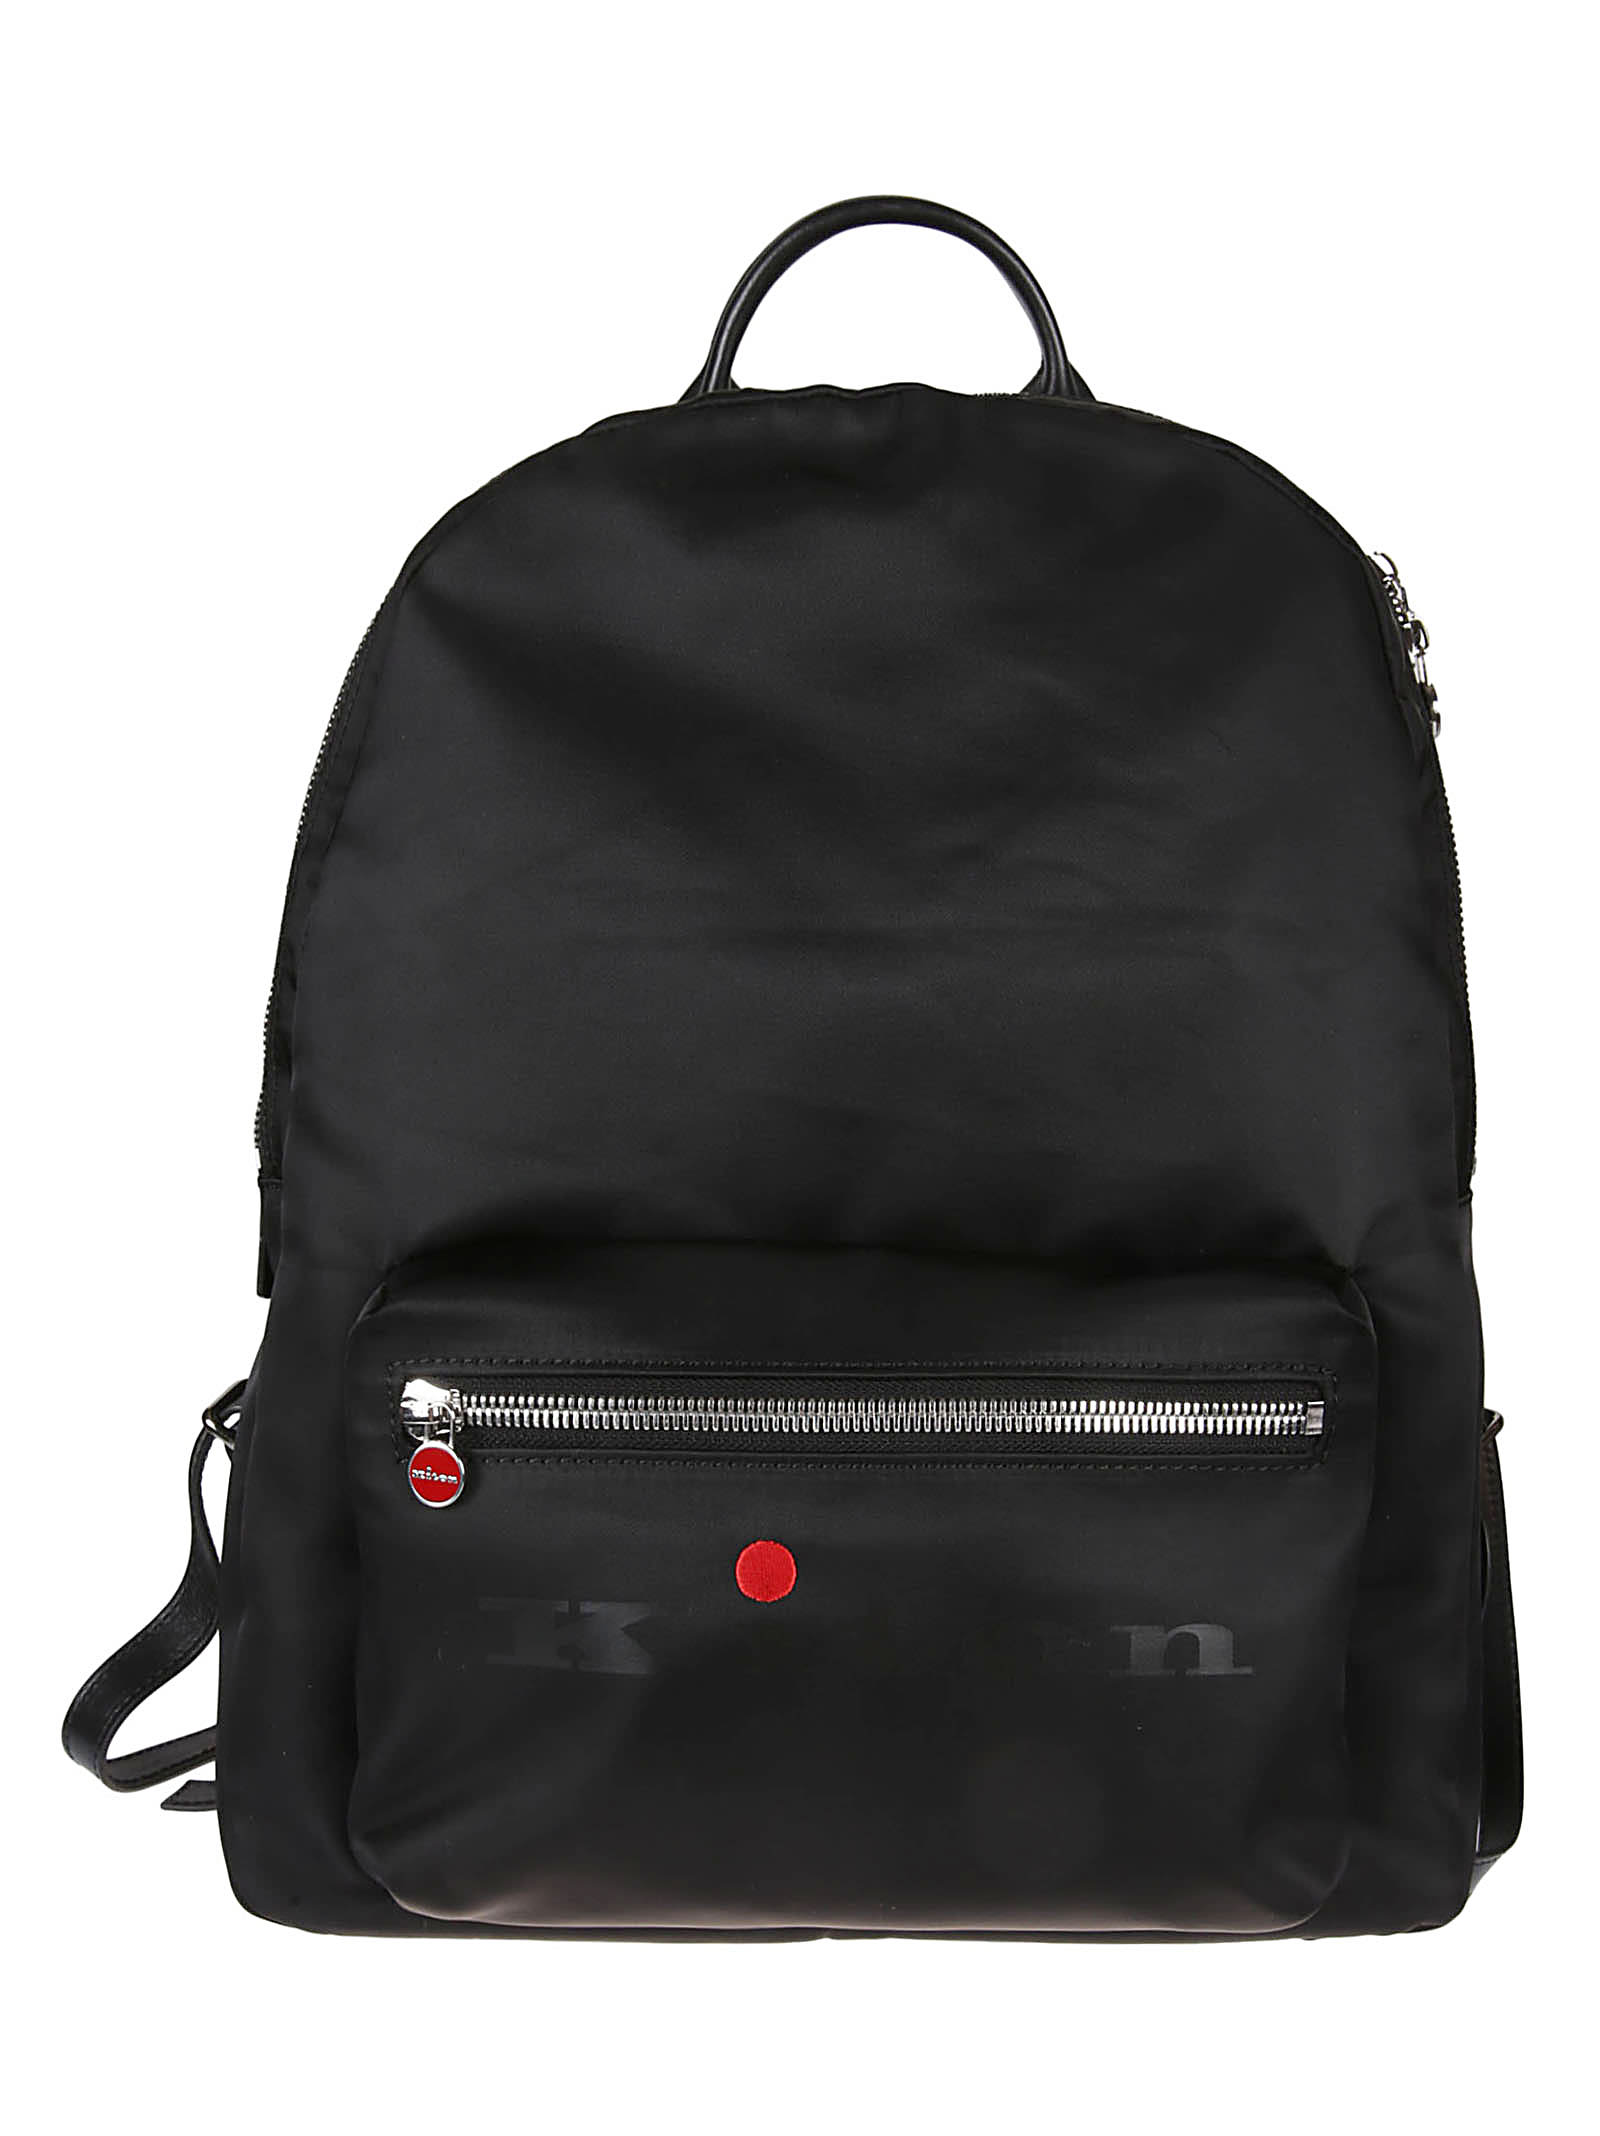 A0021 Backpack